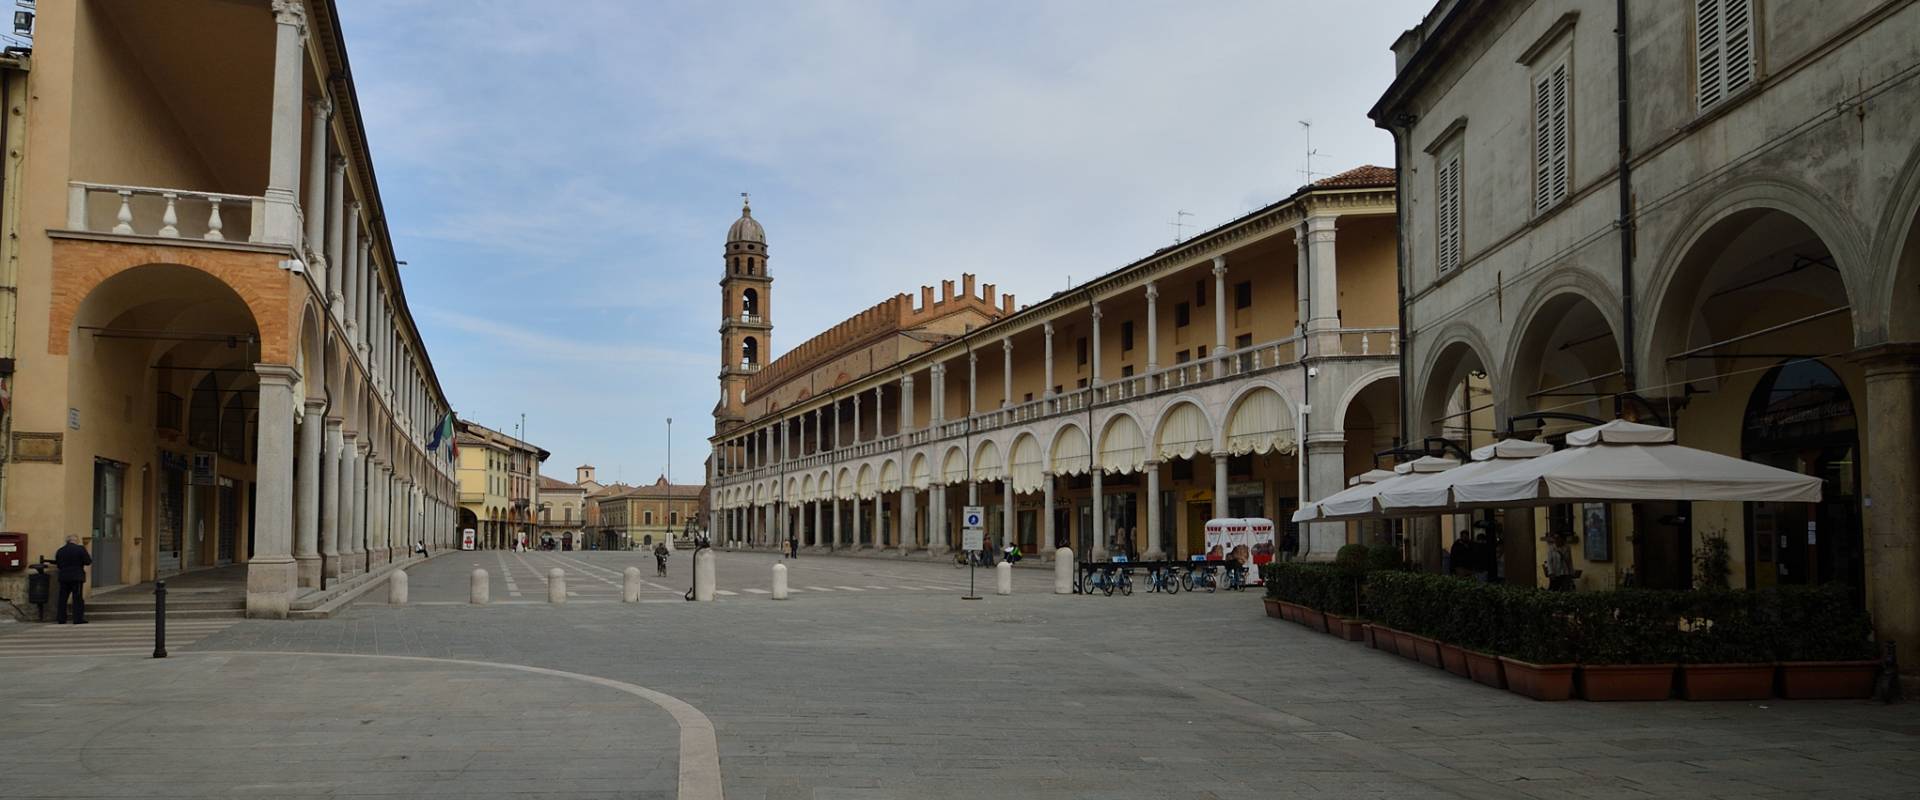 Piazza del Popolo nella sua estensione Faenza photo by Wwikiwalter